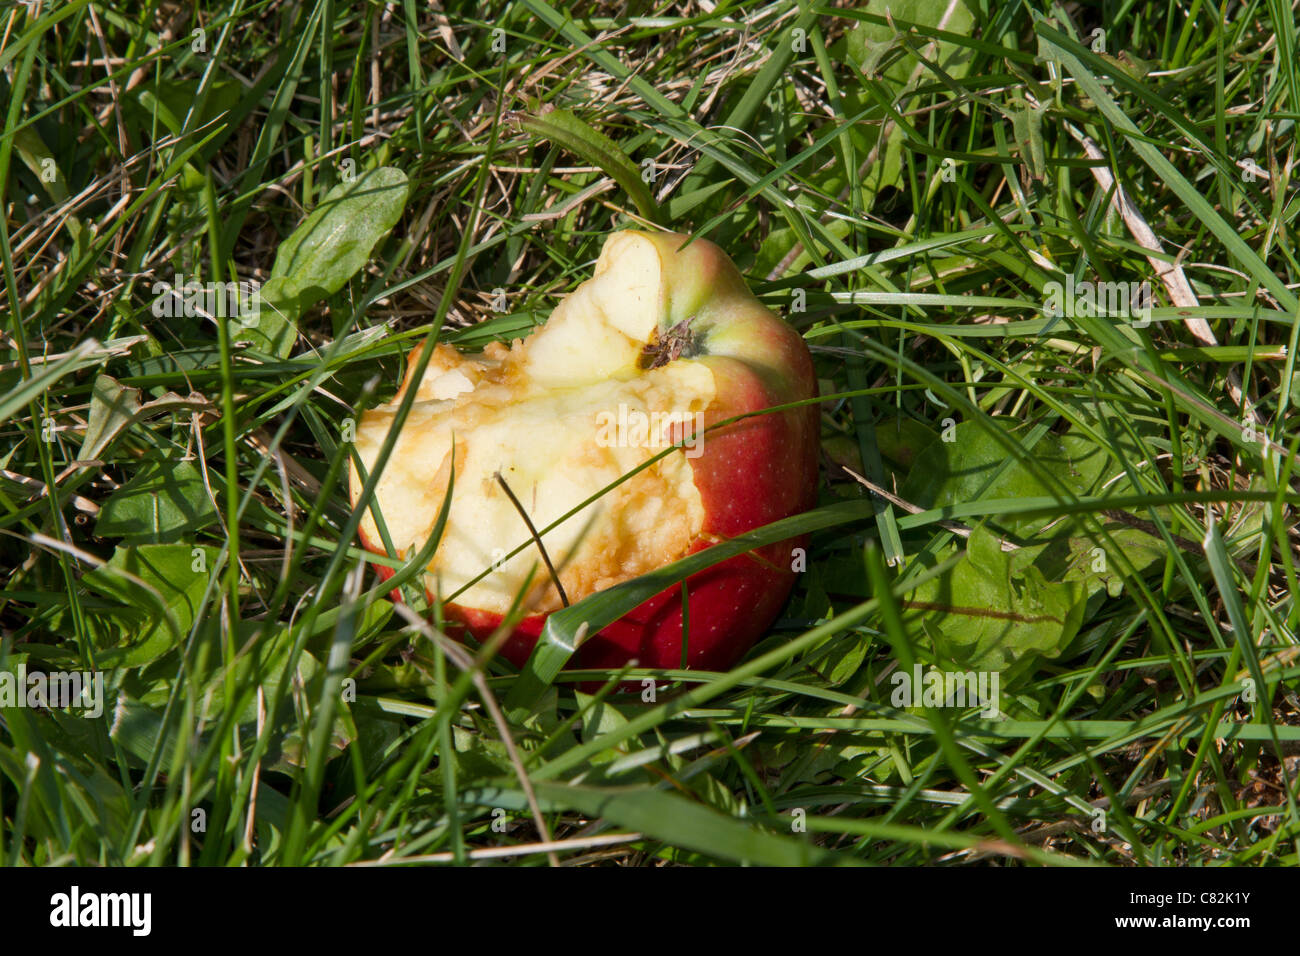 Comido media manzana podrida Foto de stock